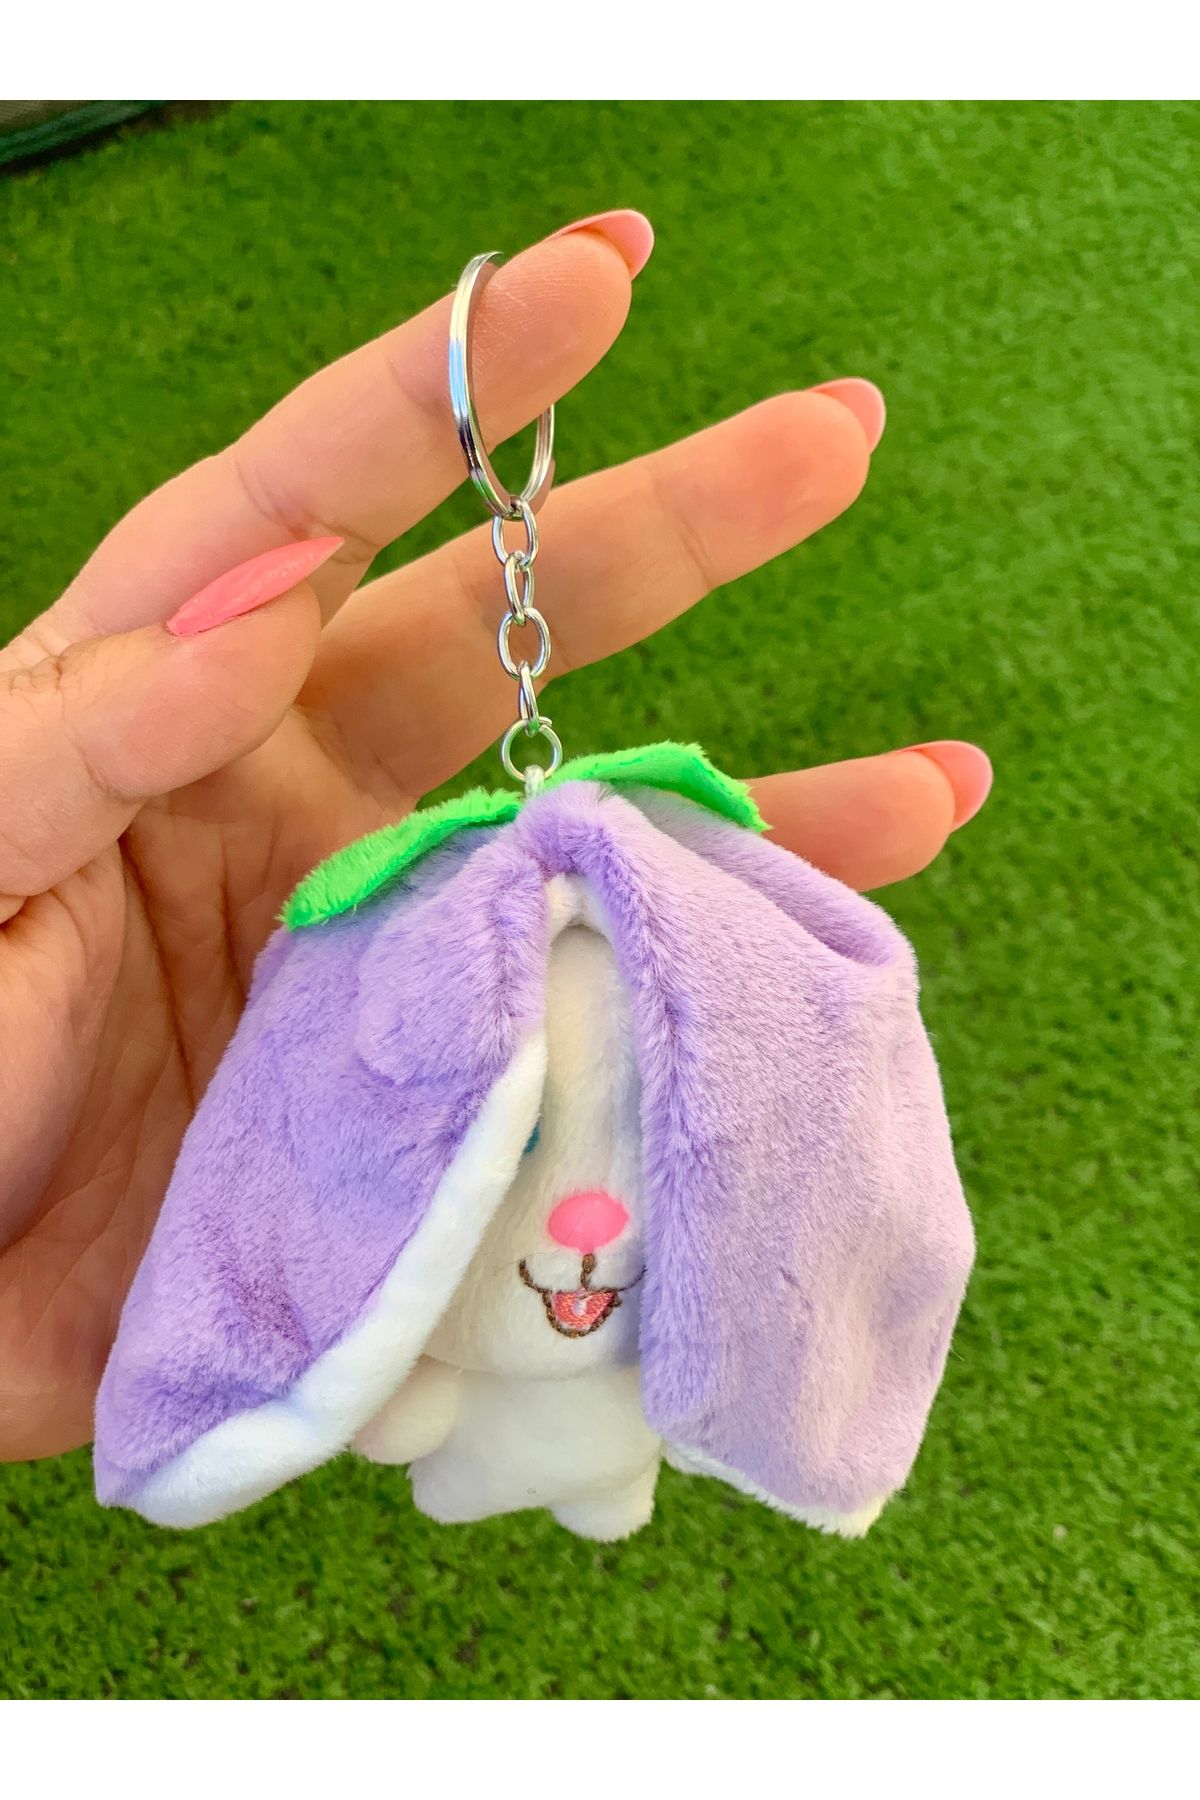 Meyra Accessories 1 adet sevimli uzun kulaklı tavşan renkli ?peluş araba çanta süslü hediyelik oyuncak anahtarlık